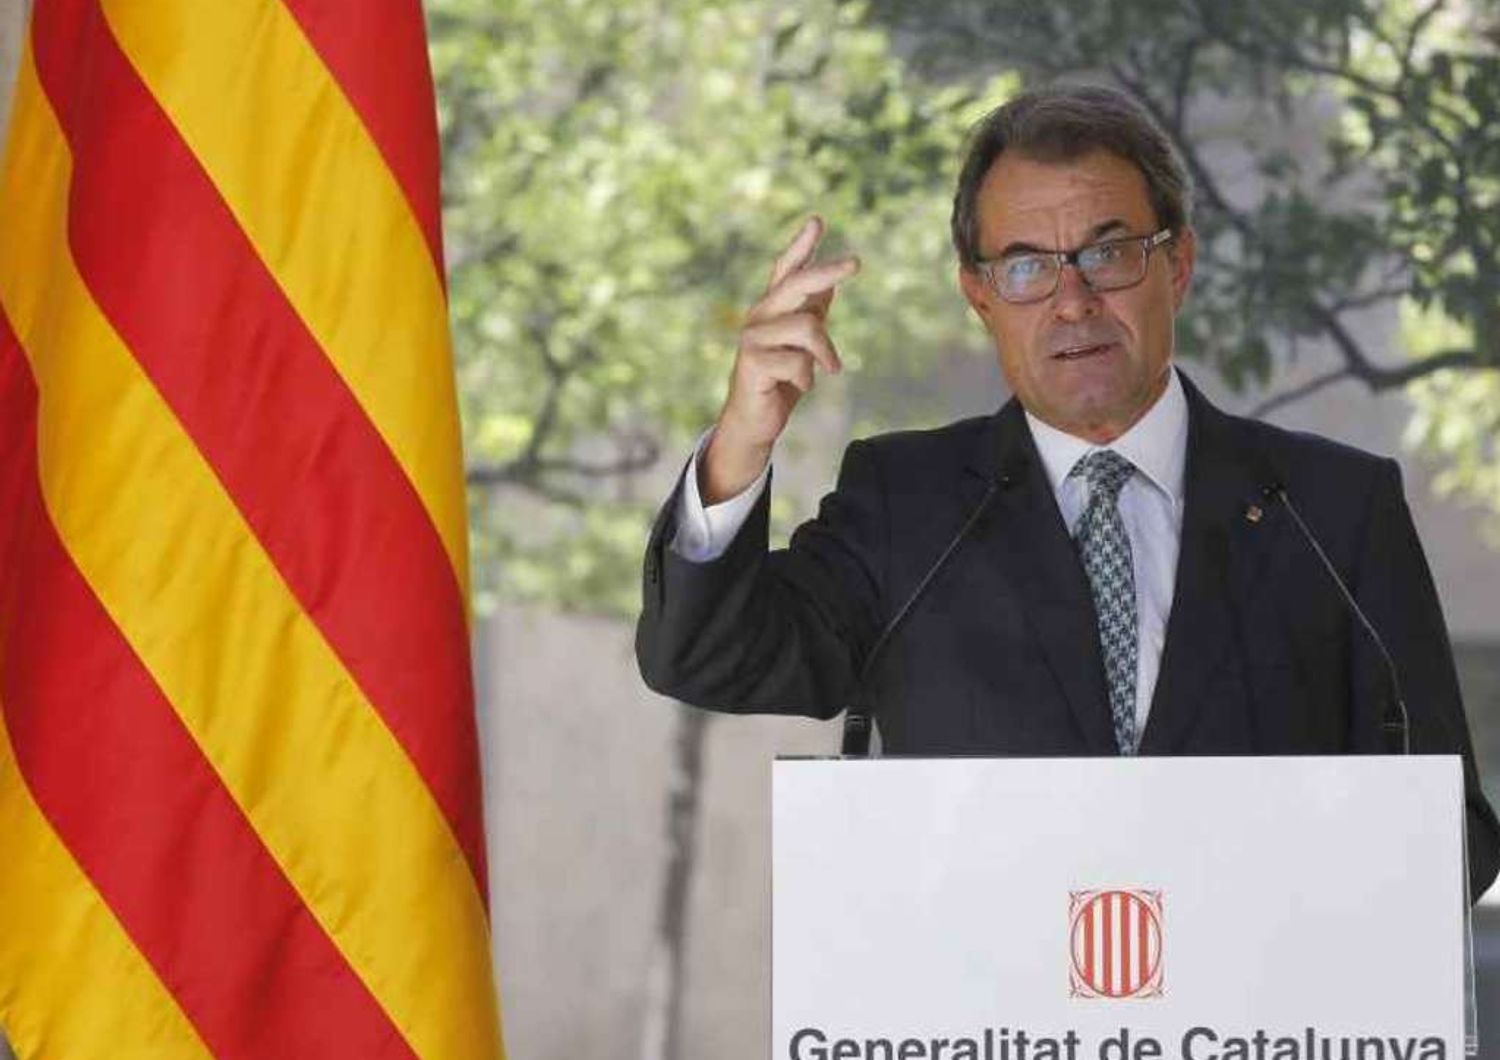 Catalogna convoca referendum indipendenza il 9 novembre